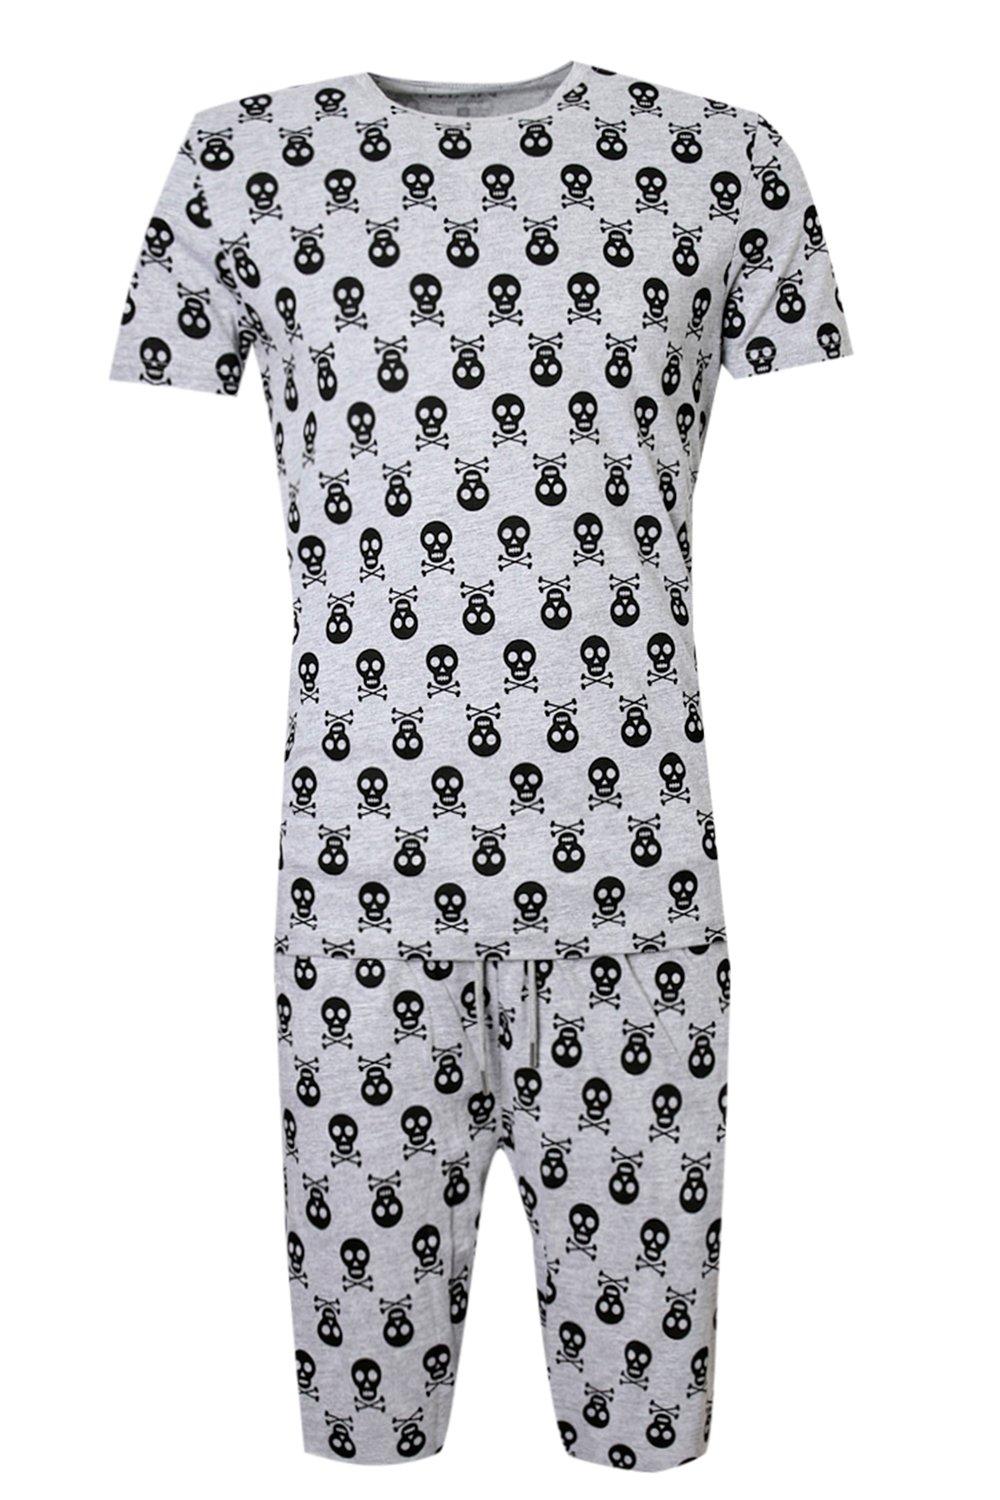 Sensación R evaporación Conjunto de pijama con calaveras y huesos cruzados para Halloween | boohoo